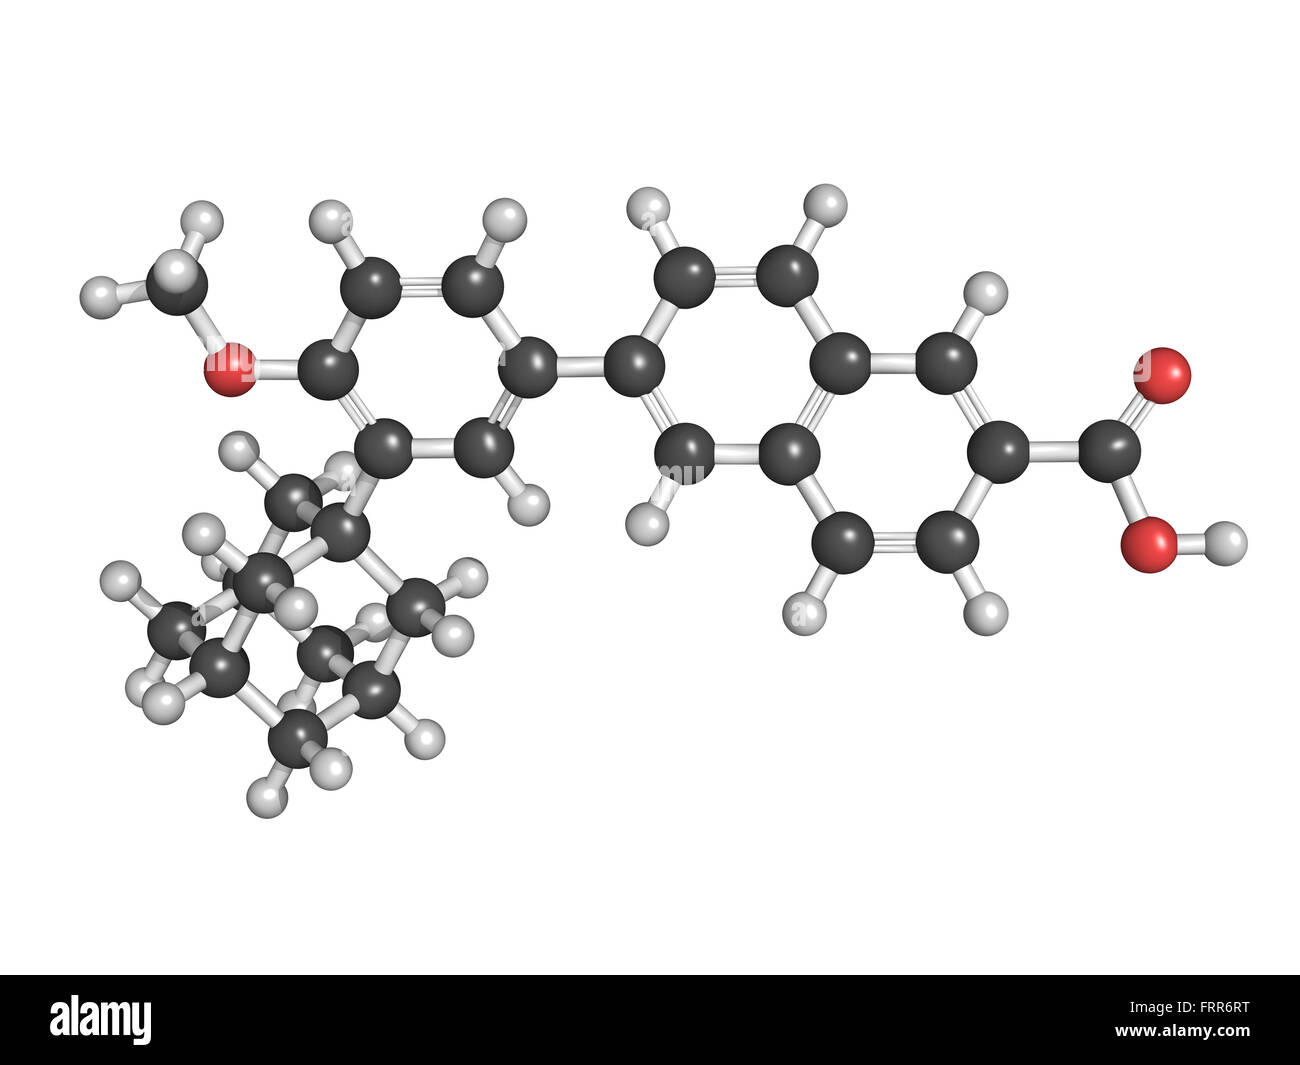 Adapalen Akne-Behandlung-Medikament, chemische Struktur. Atome werden als Kugeln mit konventionellen Farbkodierung dargestellt. Stockfoto